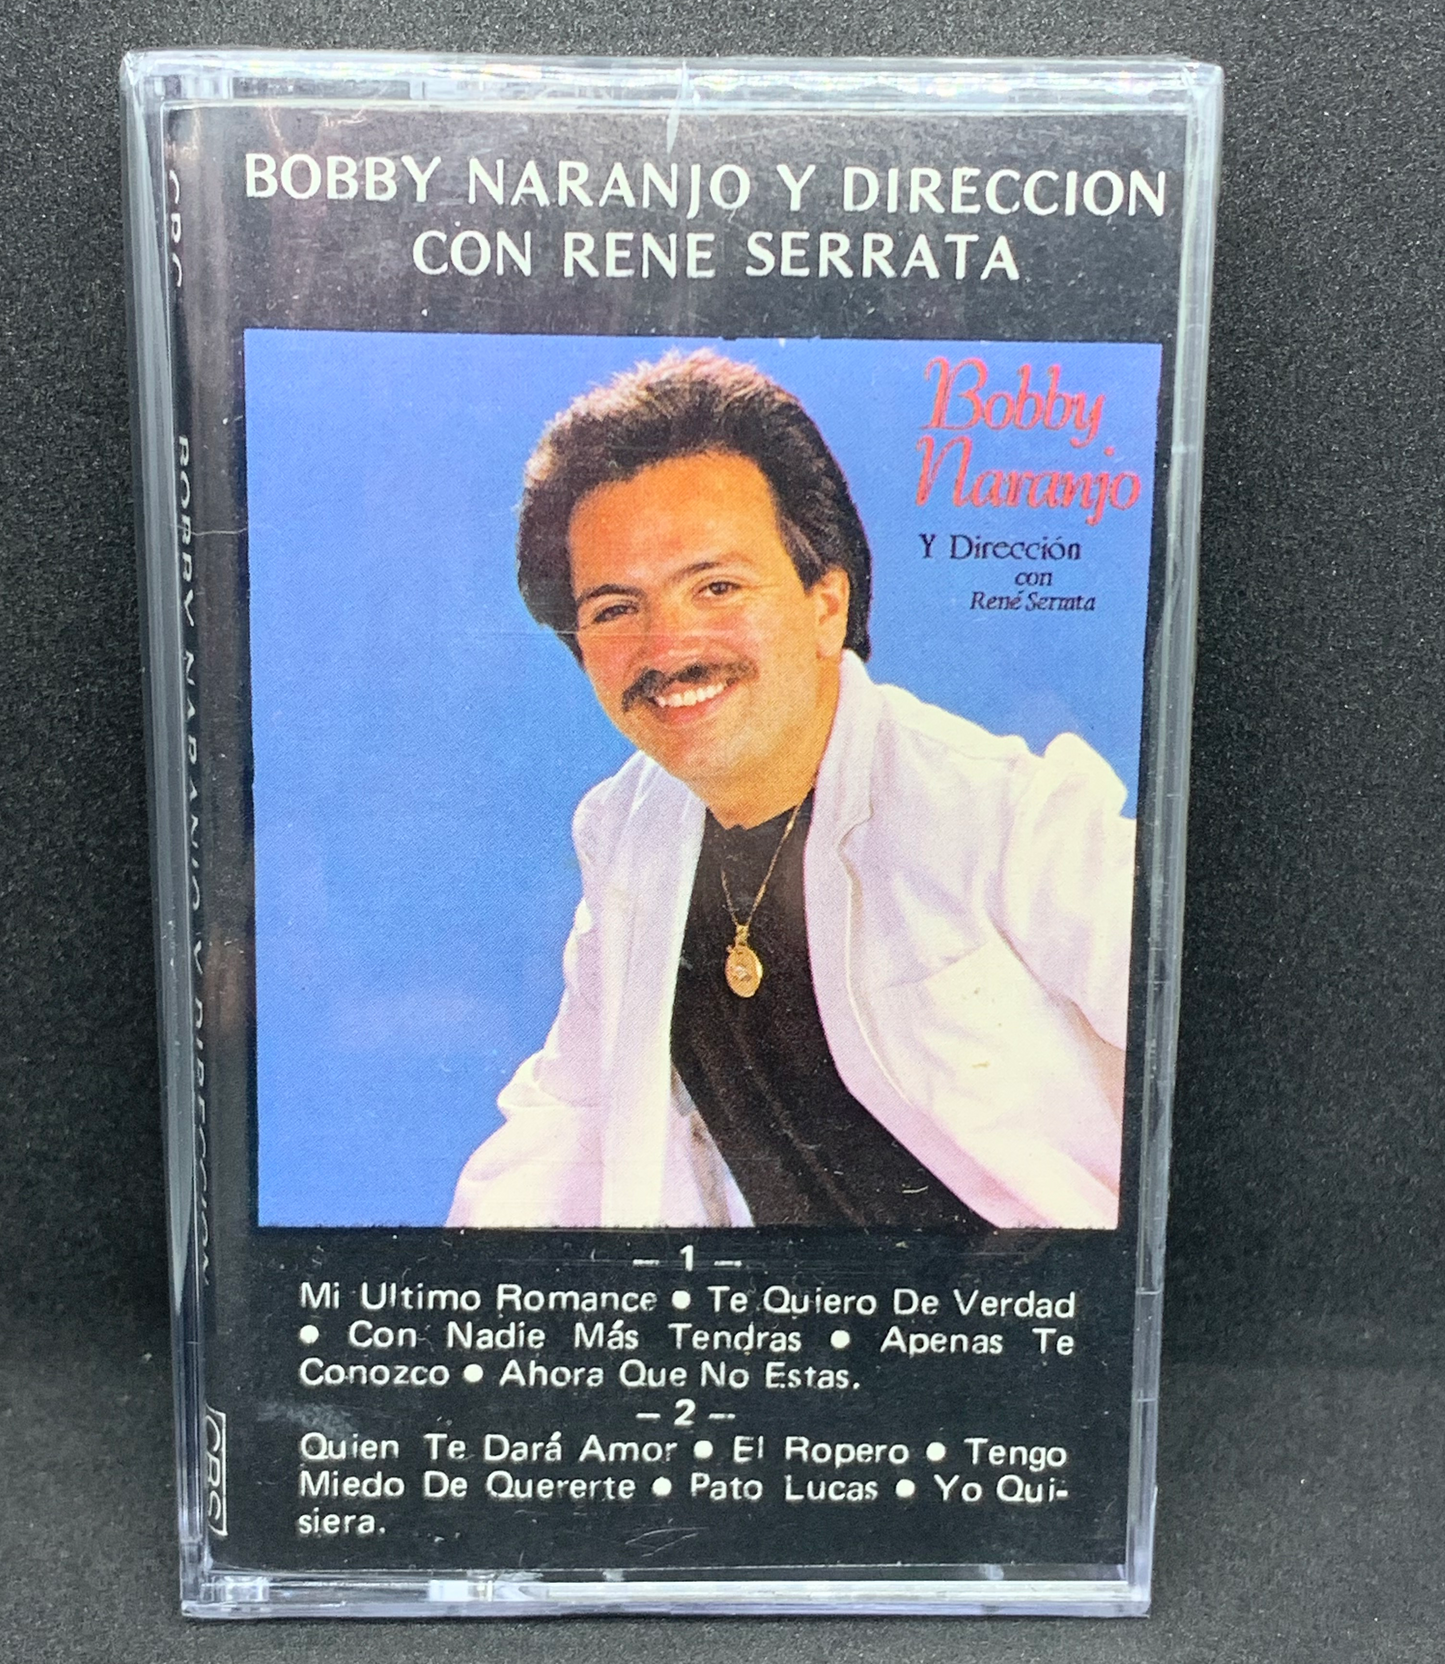 Bobby Naranjo Y Direccion con Rene Serrata (Cassette)